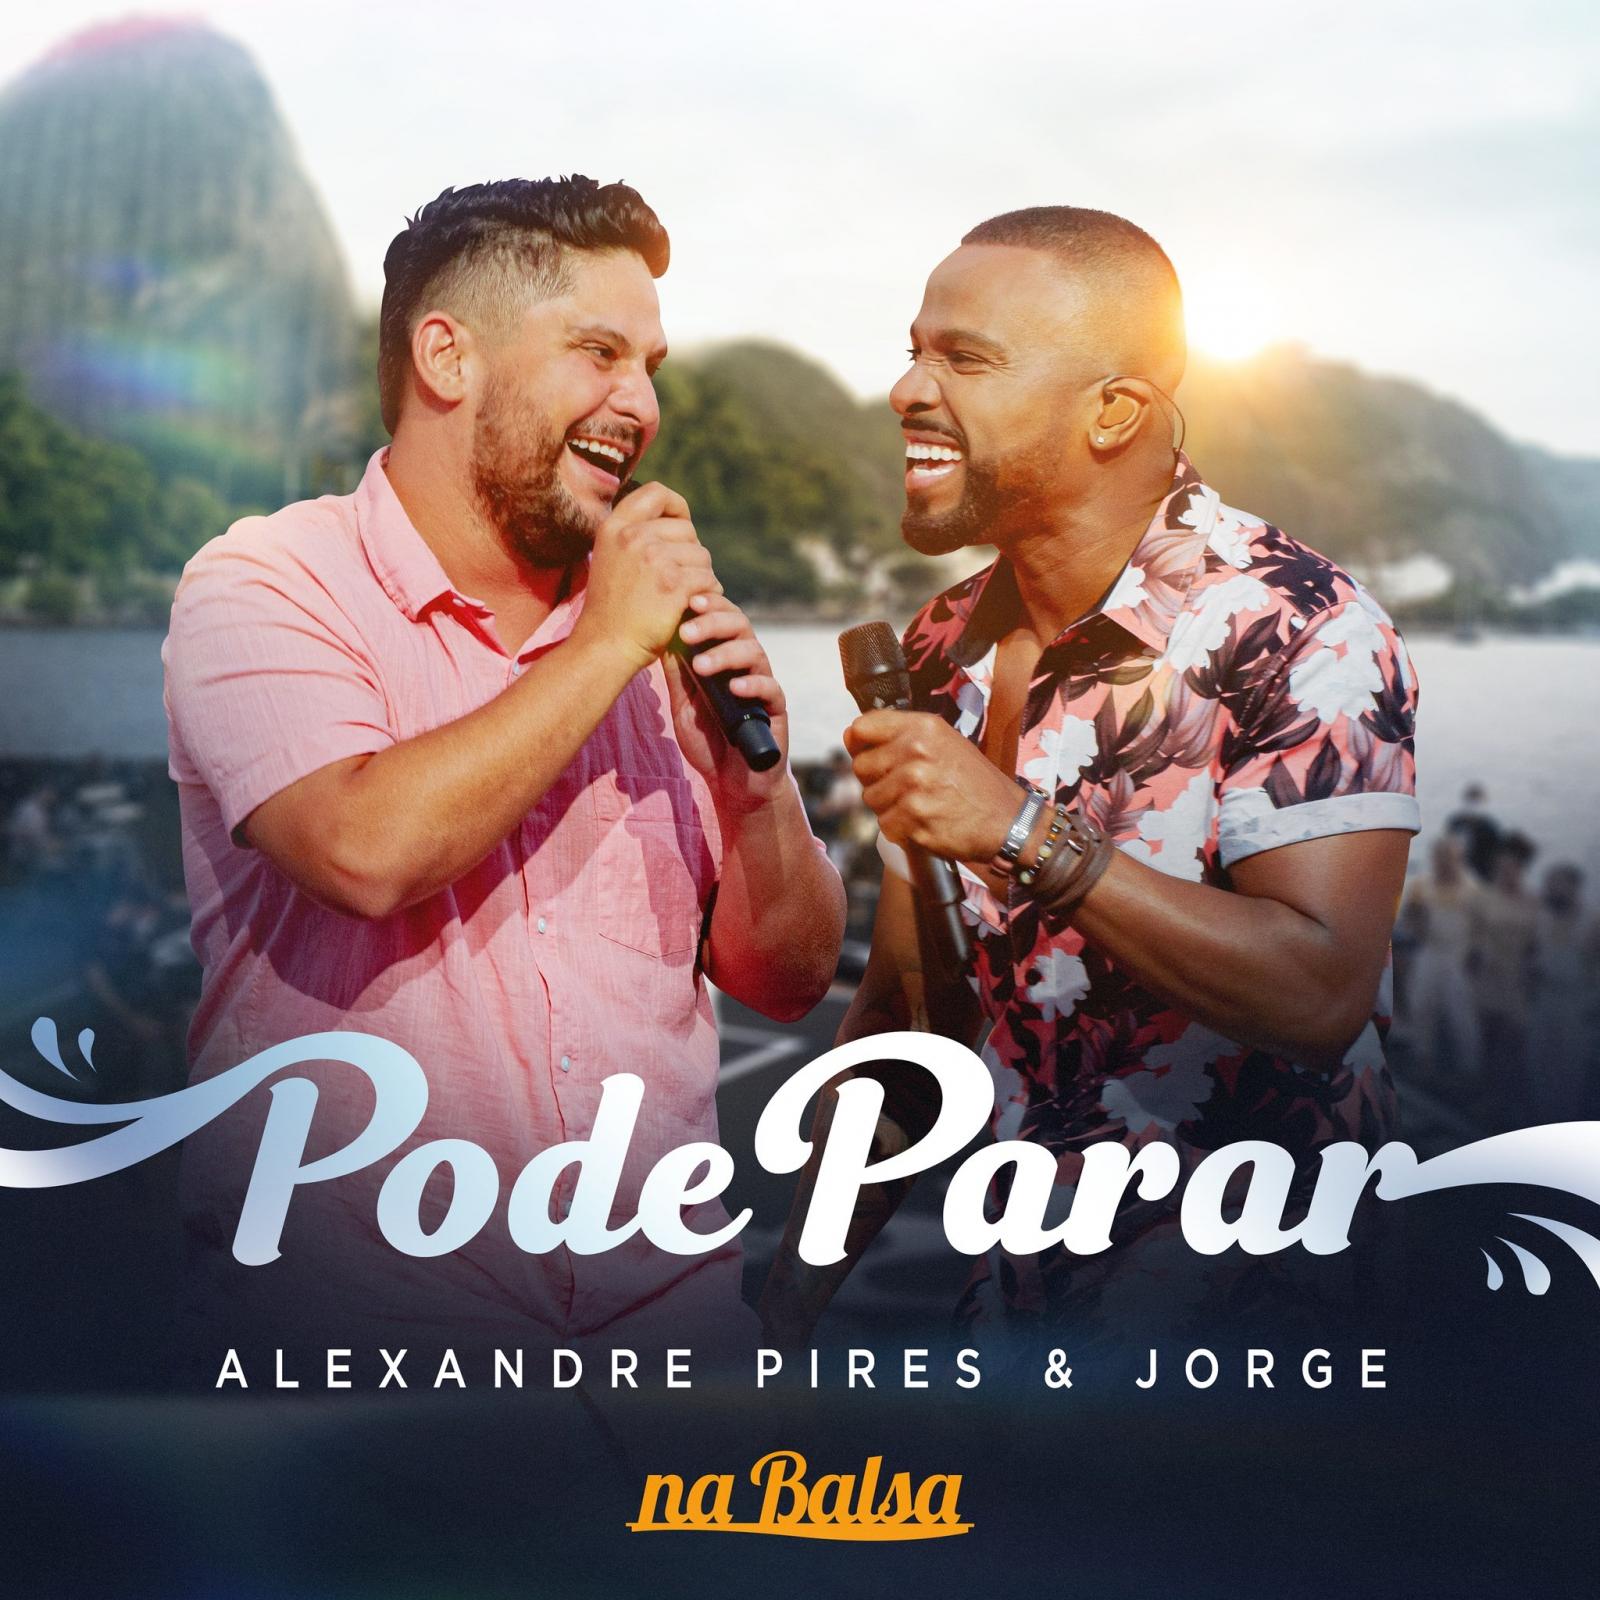 Alexandre Pires lança novo single “Pode Parar”